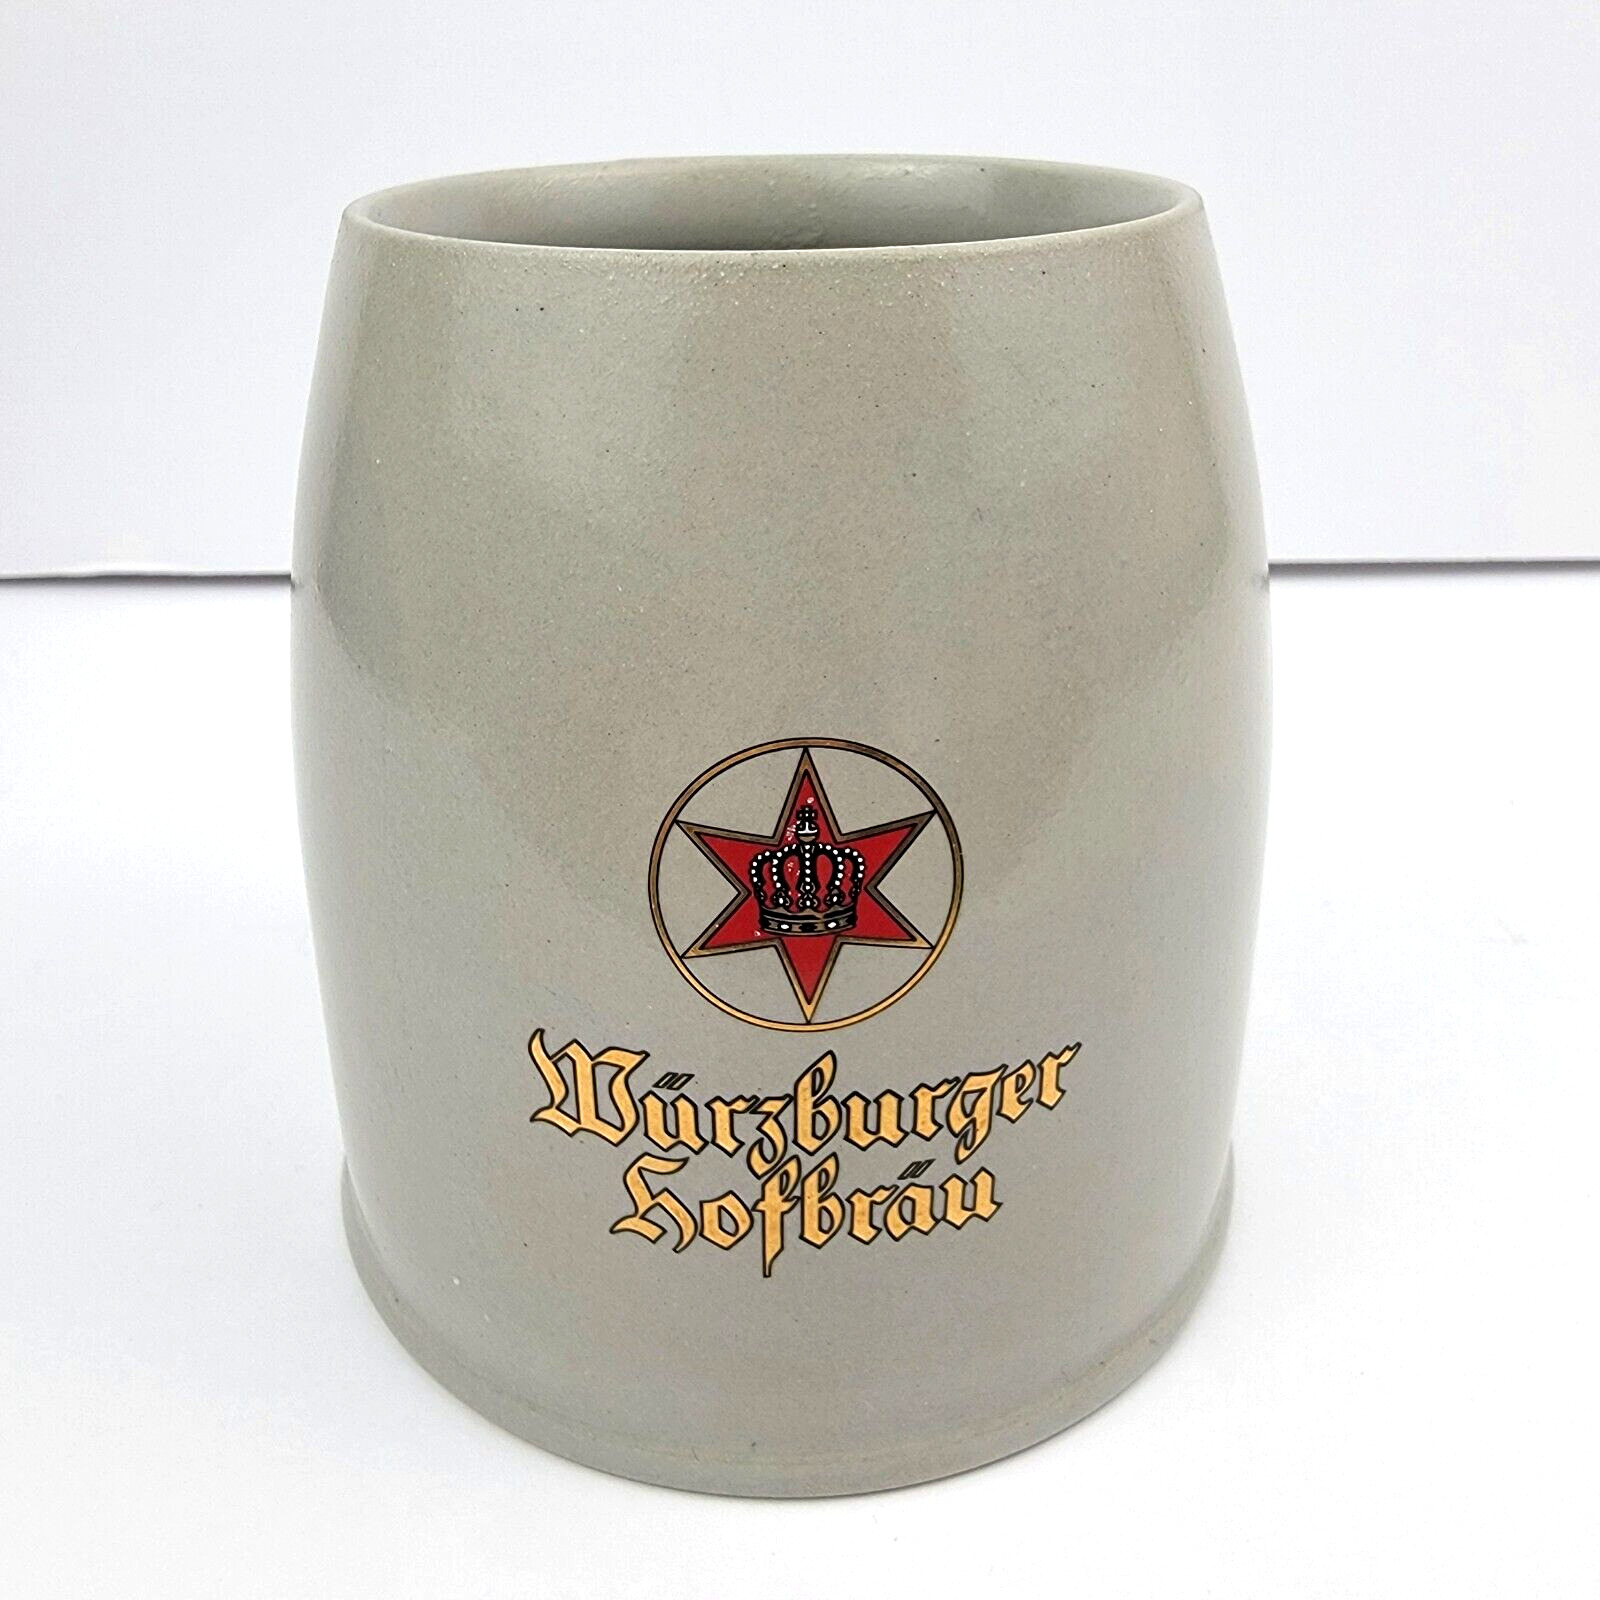 Vintage Wurzburger Hofbrau Rastal Beer Stein Mug 0.5L German Stoneware Cup RARE